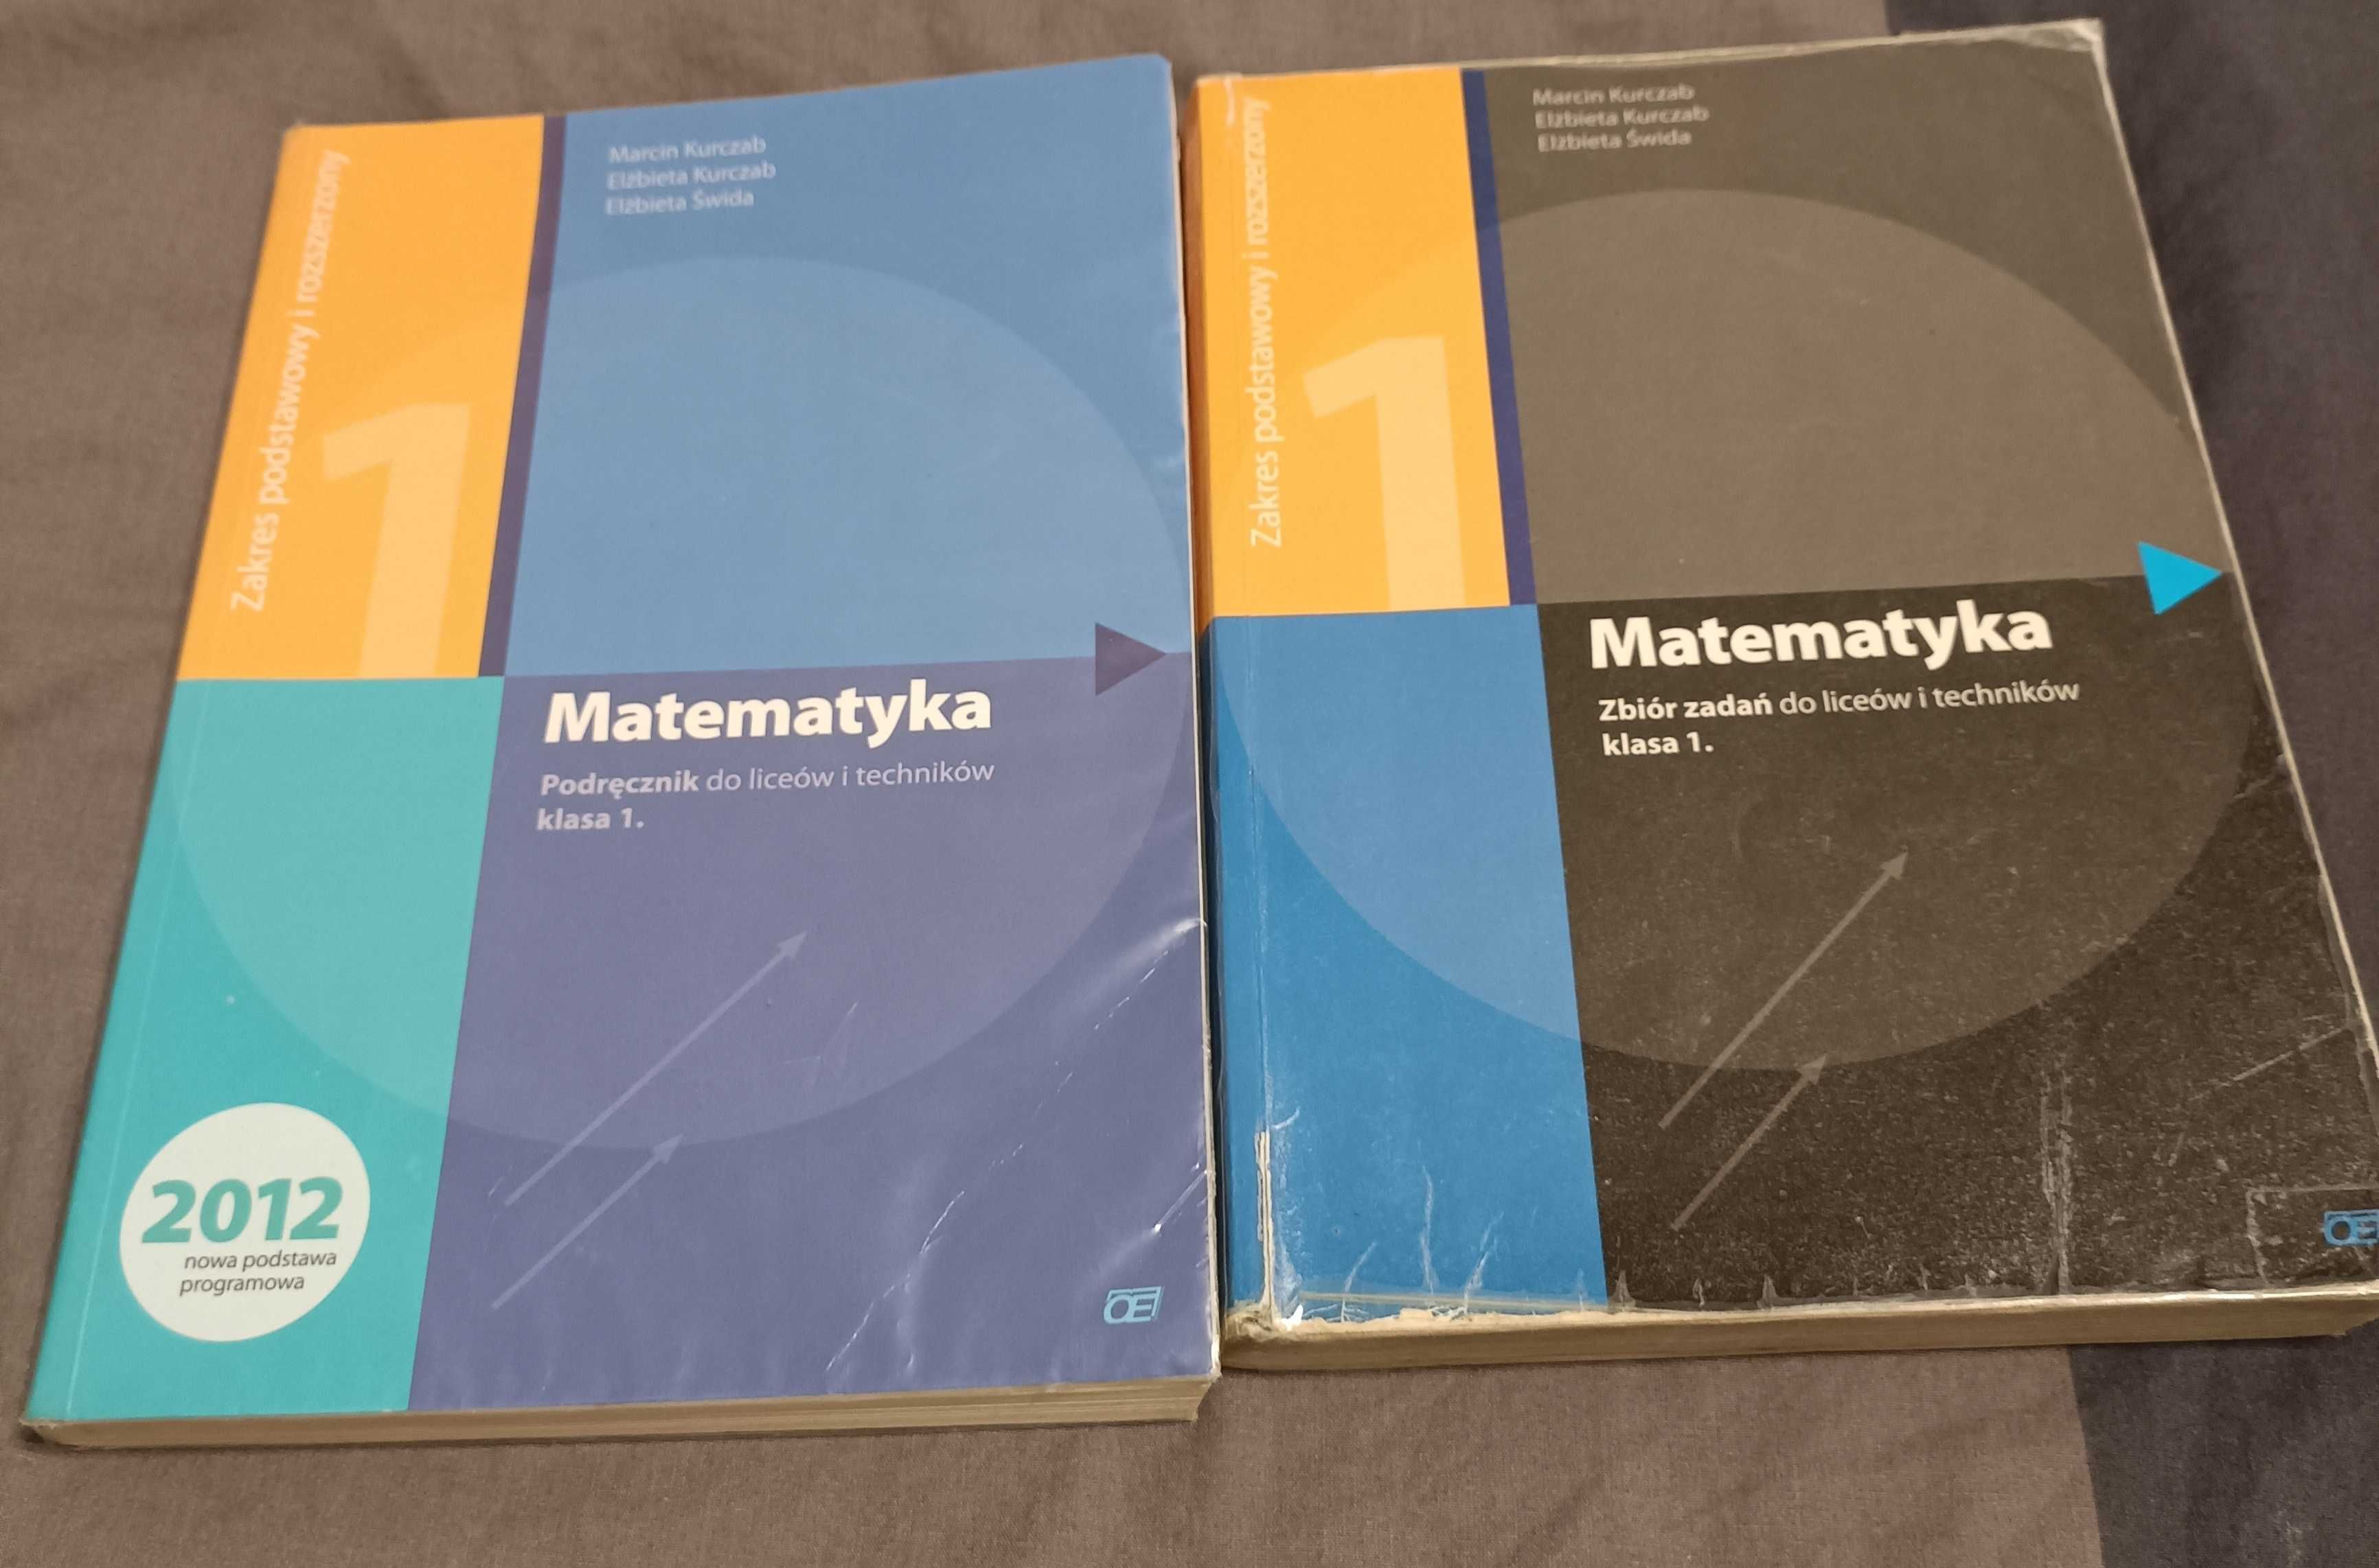 Matematyka Krzysztof Pazdro zestaw: Podręcznik + Zbiór zadań